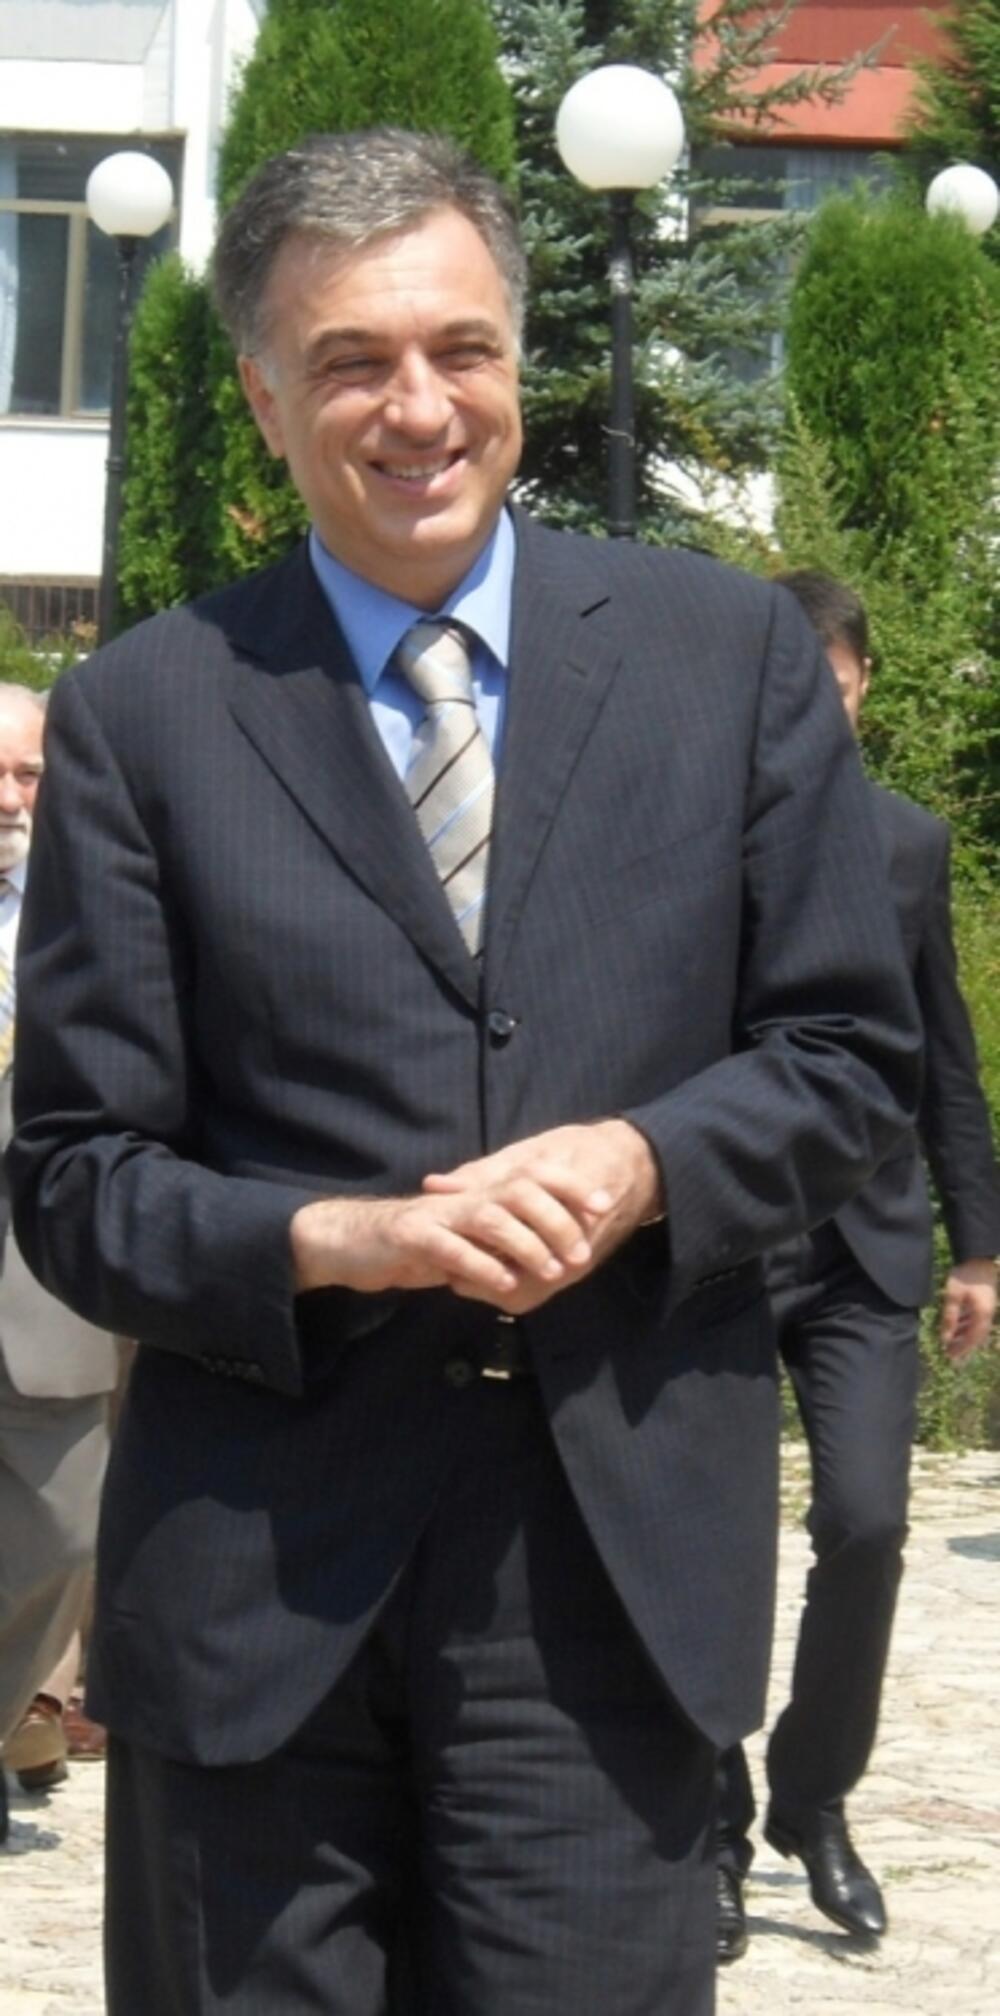 Filip Vujanović